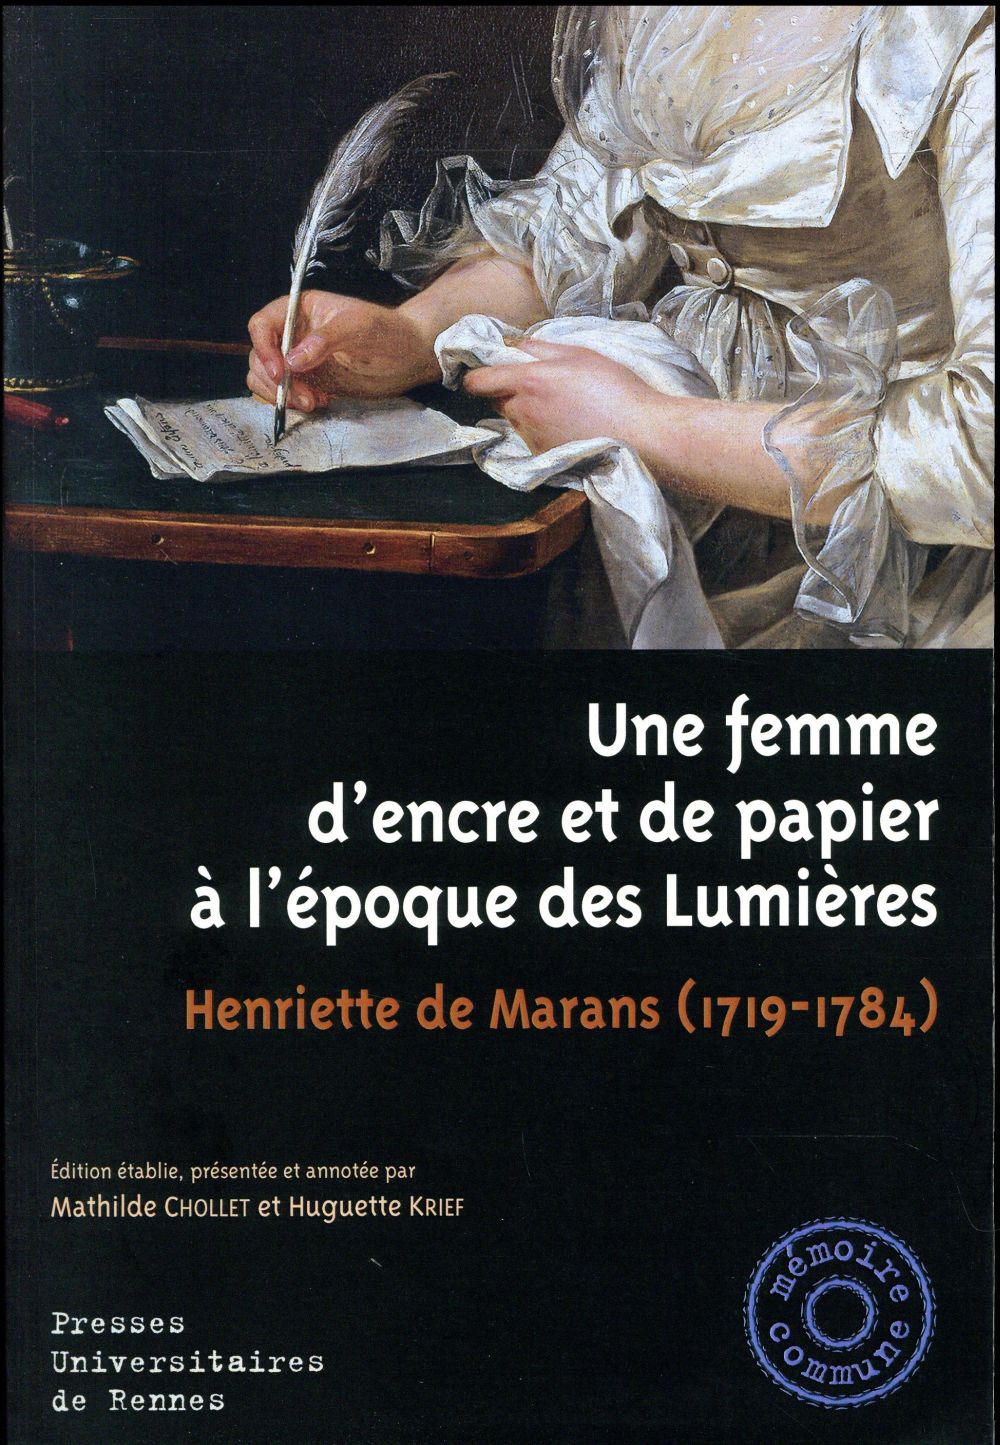 UNE FEMME D ENCRE ET DE PAPIER A L EPOQUE DES LUMIERES - HENRIETTE DE MARANS (1719-1784)